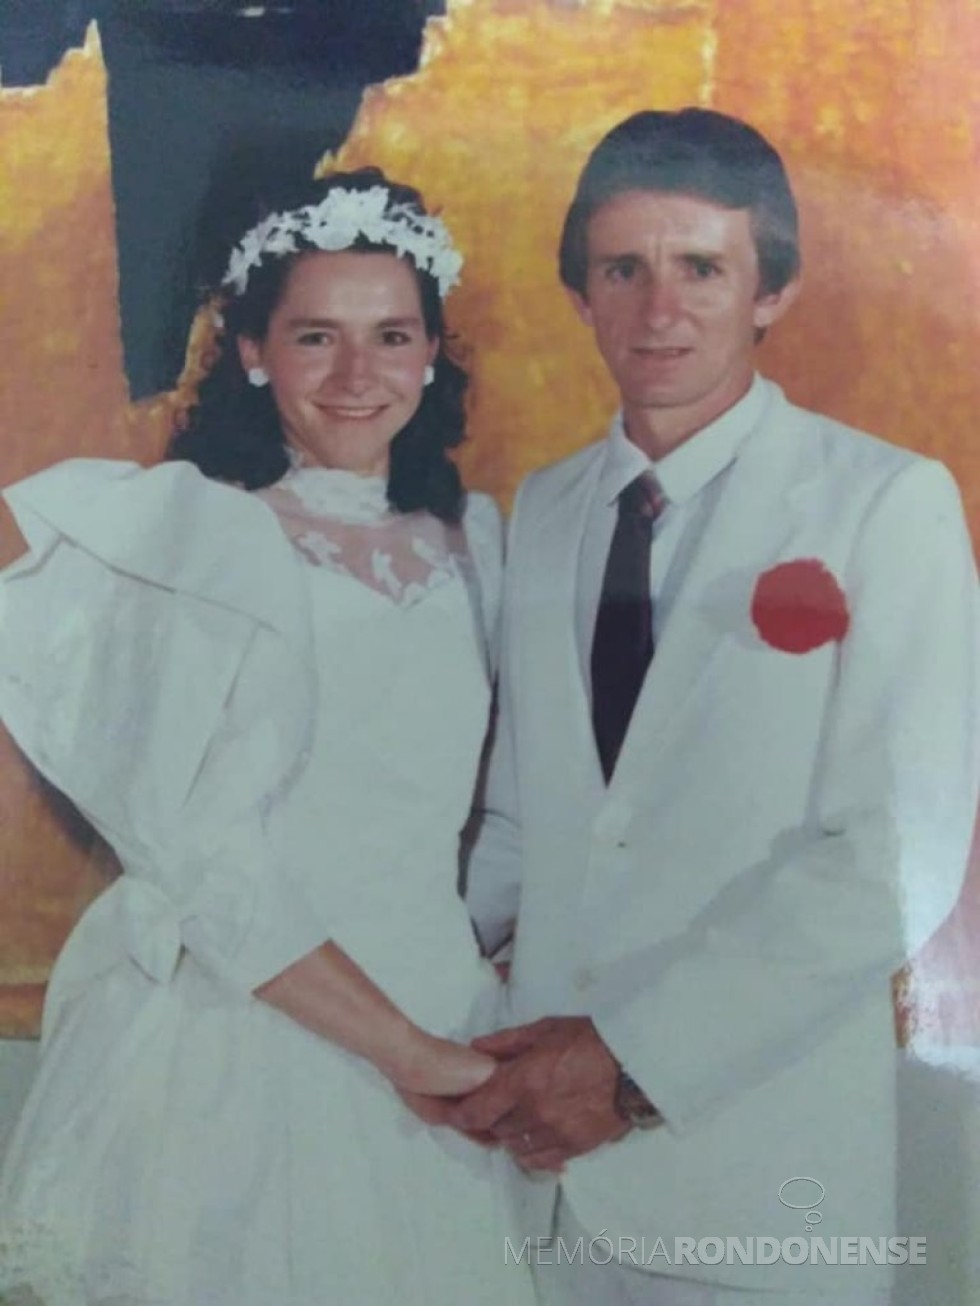 || Noivos Erini Maul e Aurio Schöne que casaram em dezembro de 1989.
Imagem: Acervo do casal - FOTO 6 - 